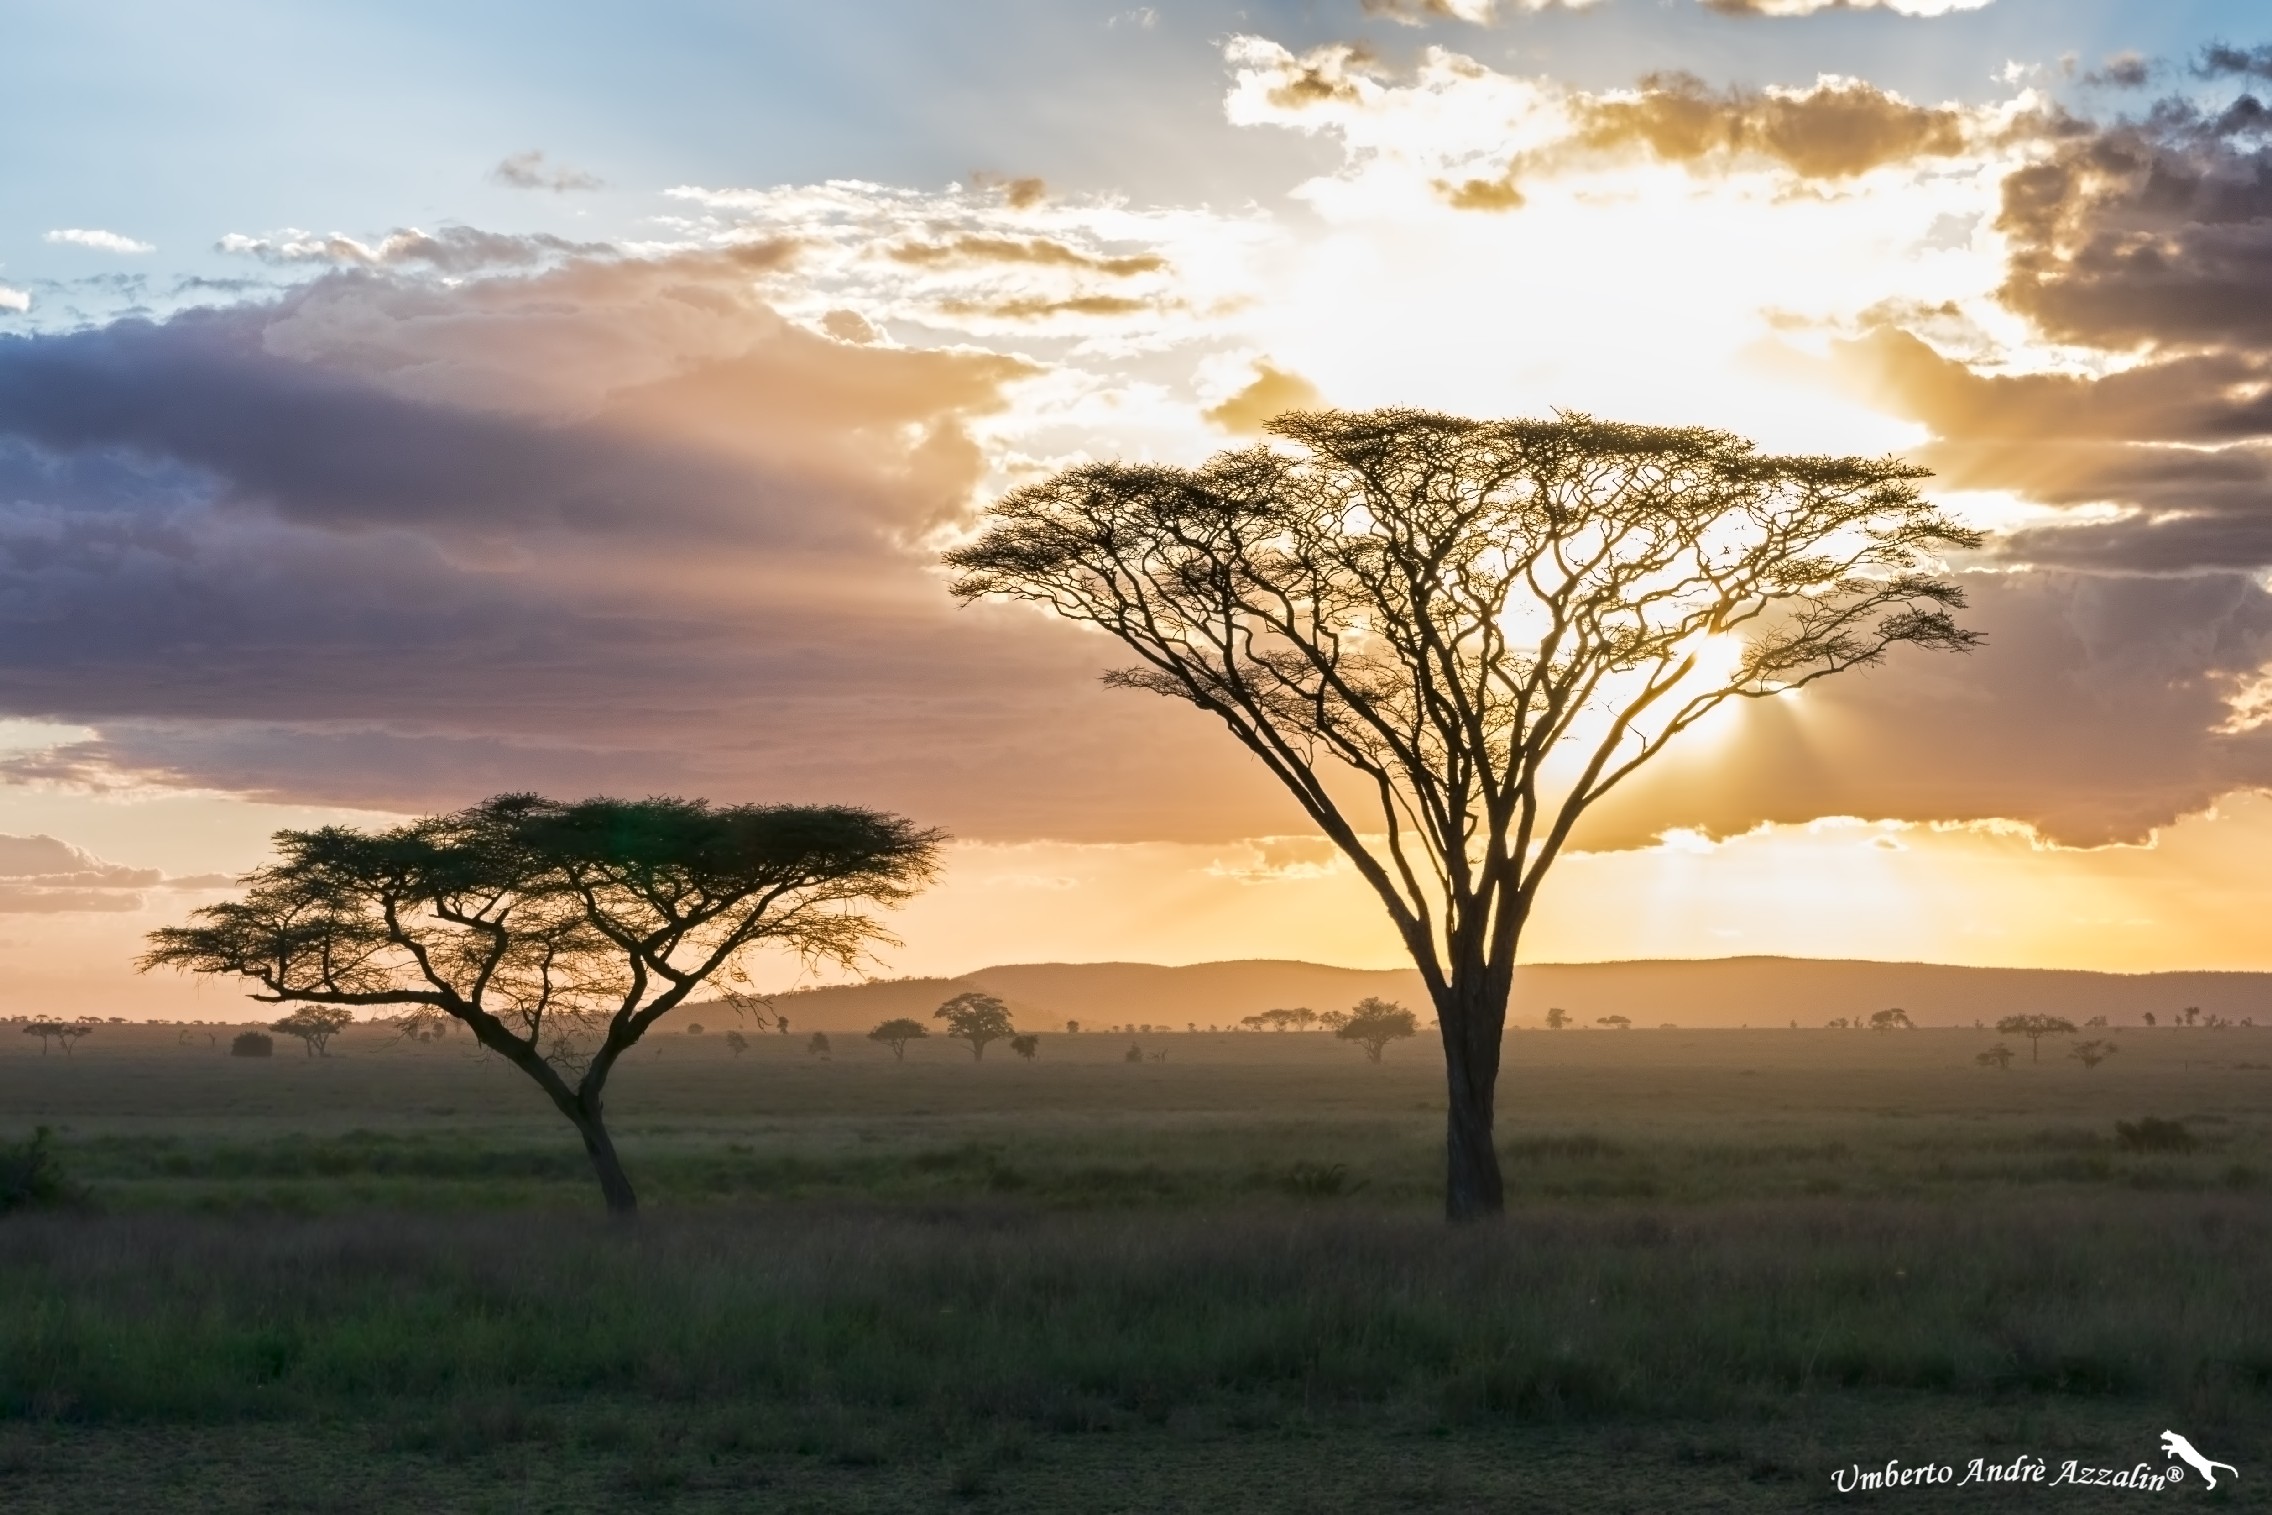 Sunset over the Serengeti...